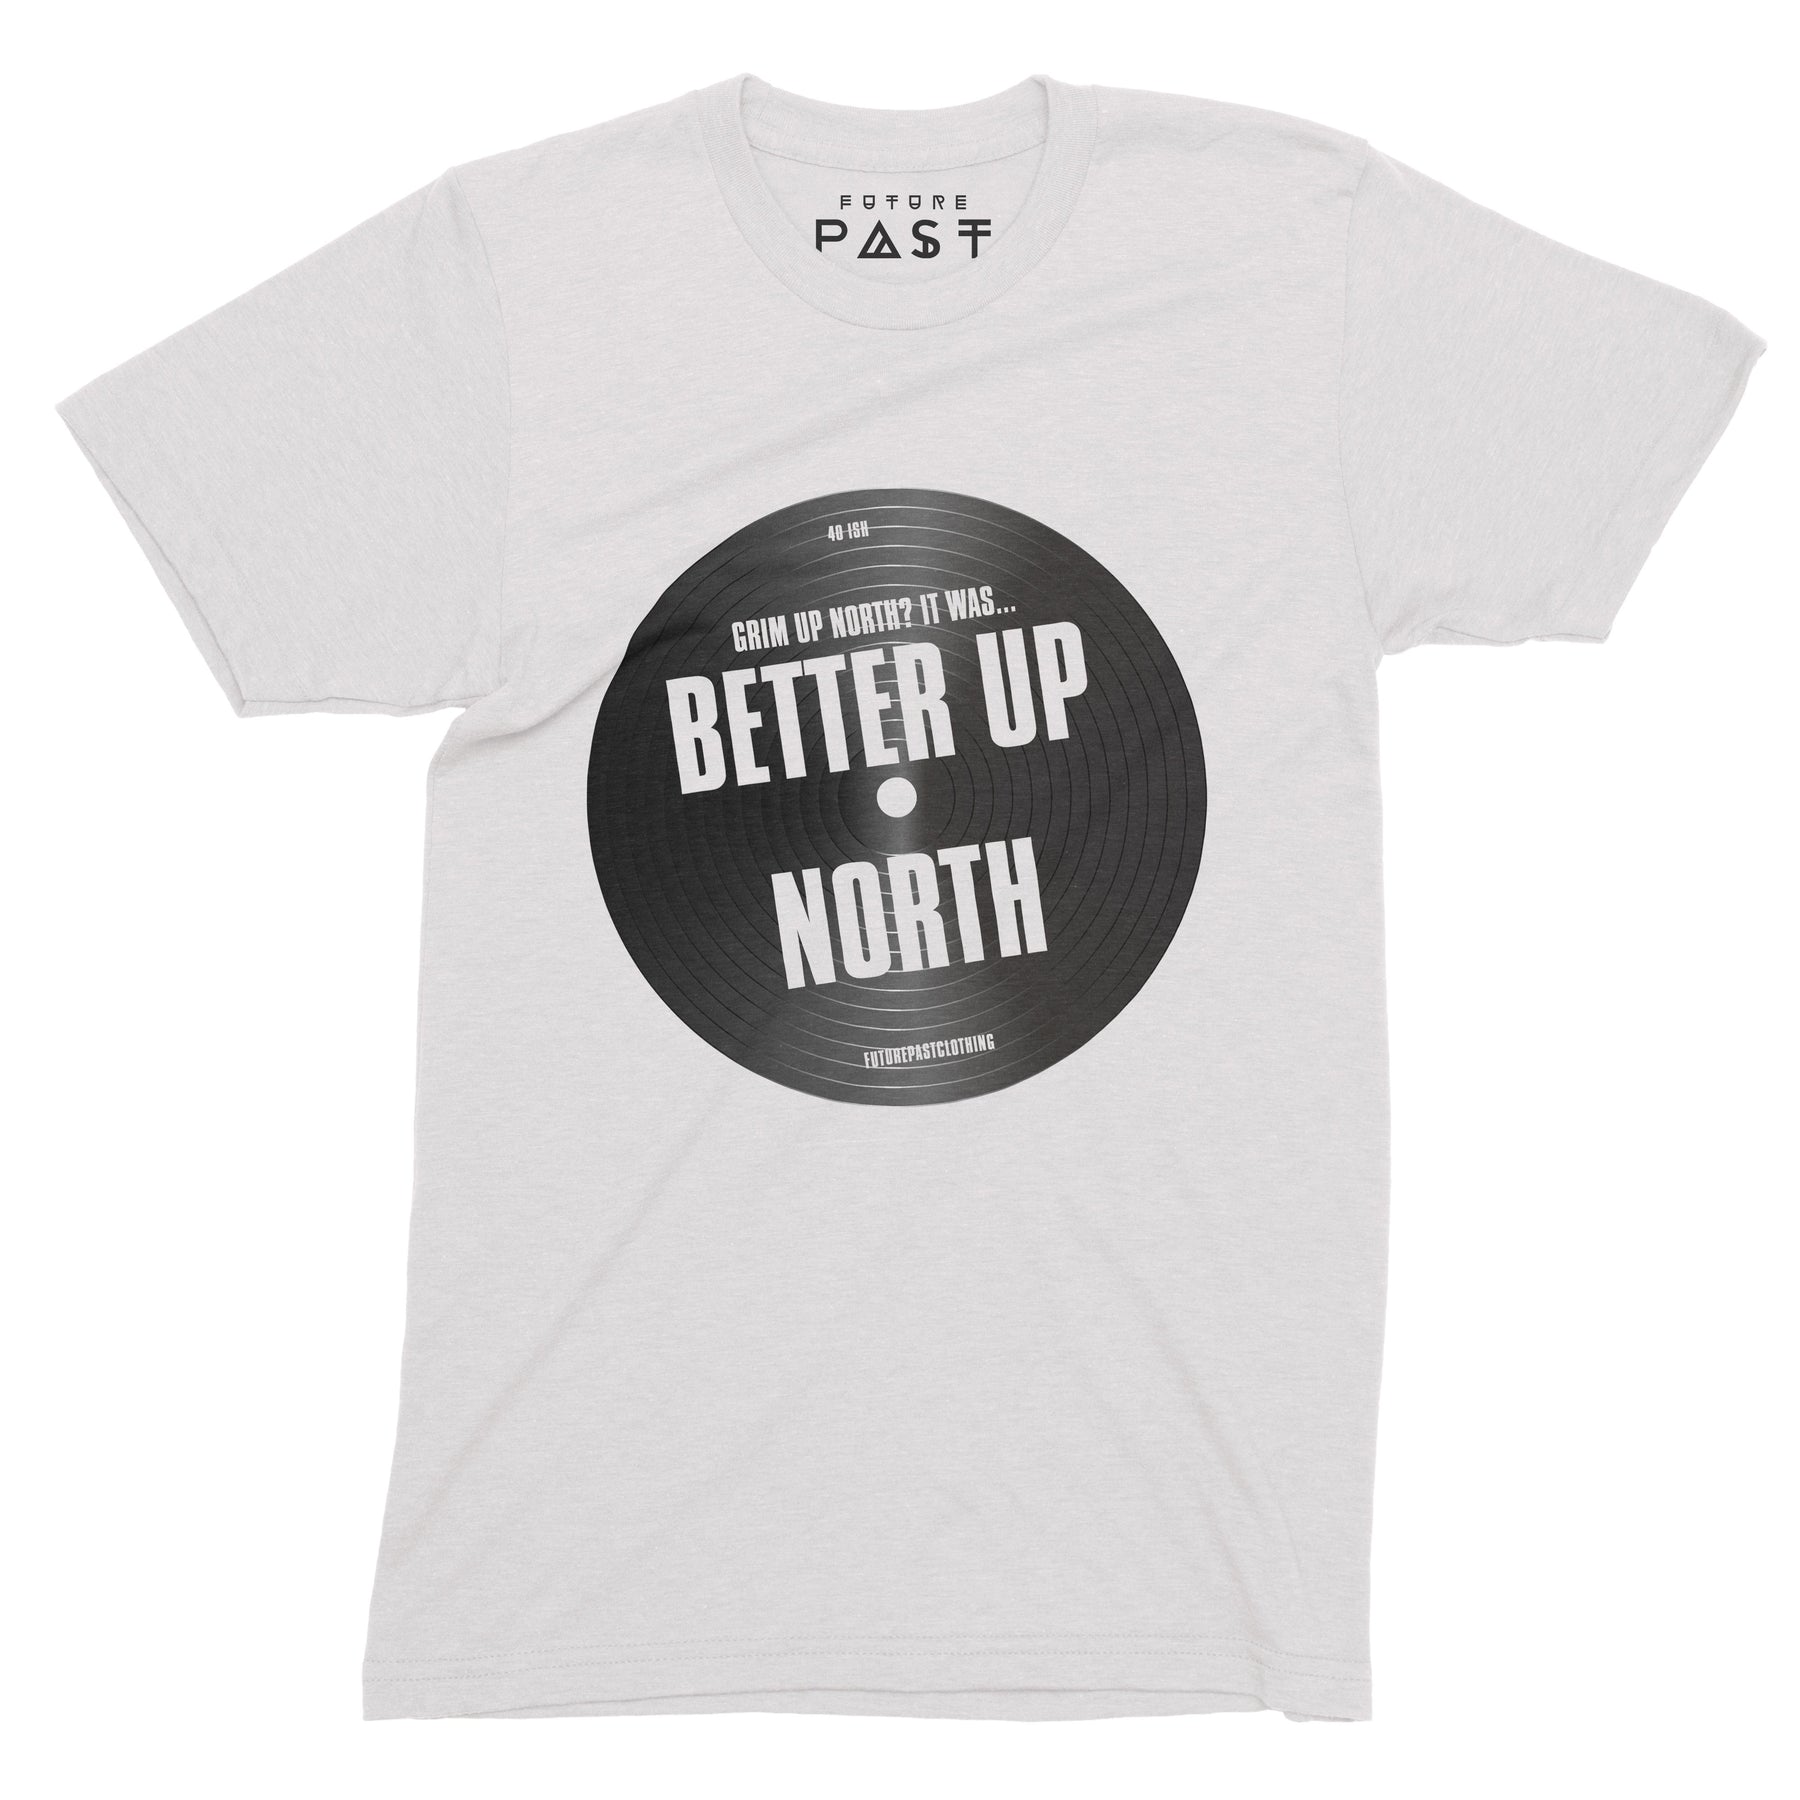 up north t shirt